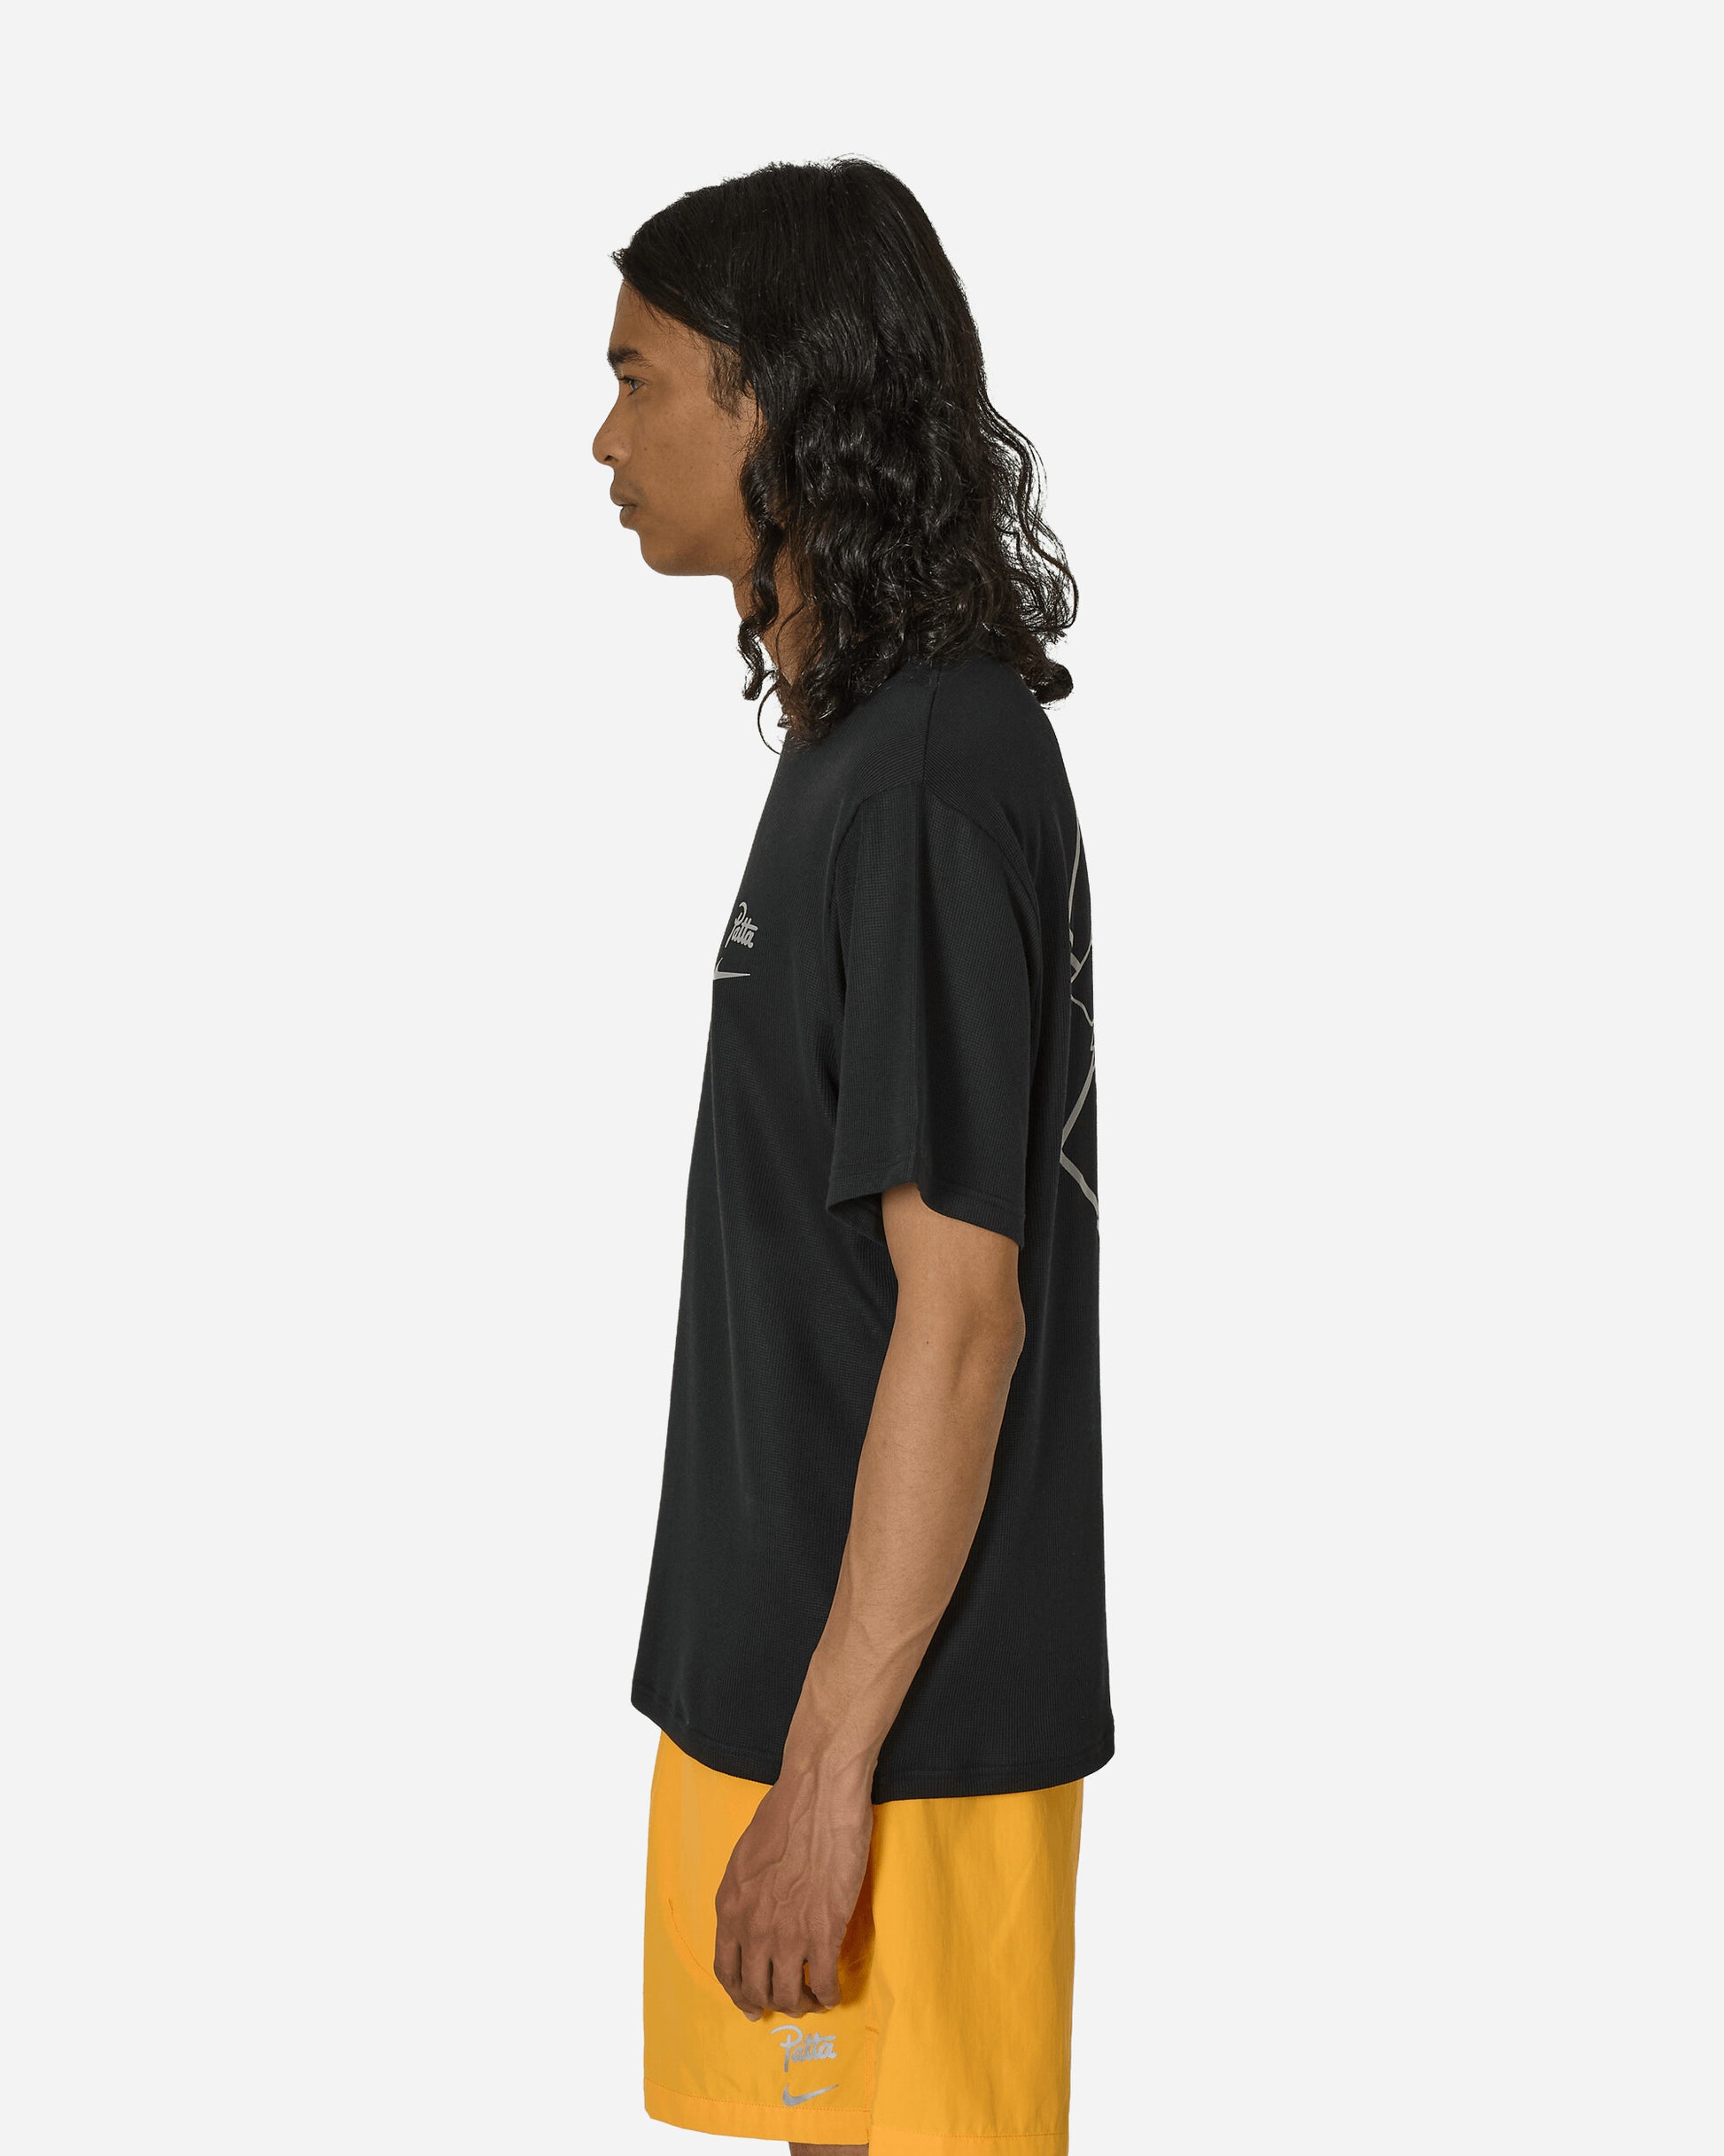 Nike M Nrg Patta Shirt Ss Black T-Shirts Shortsleeve FJ3032-010